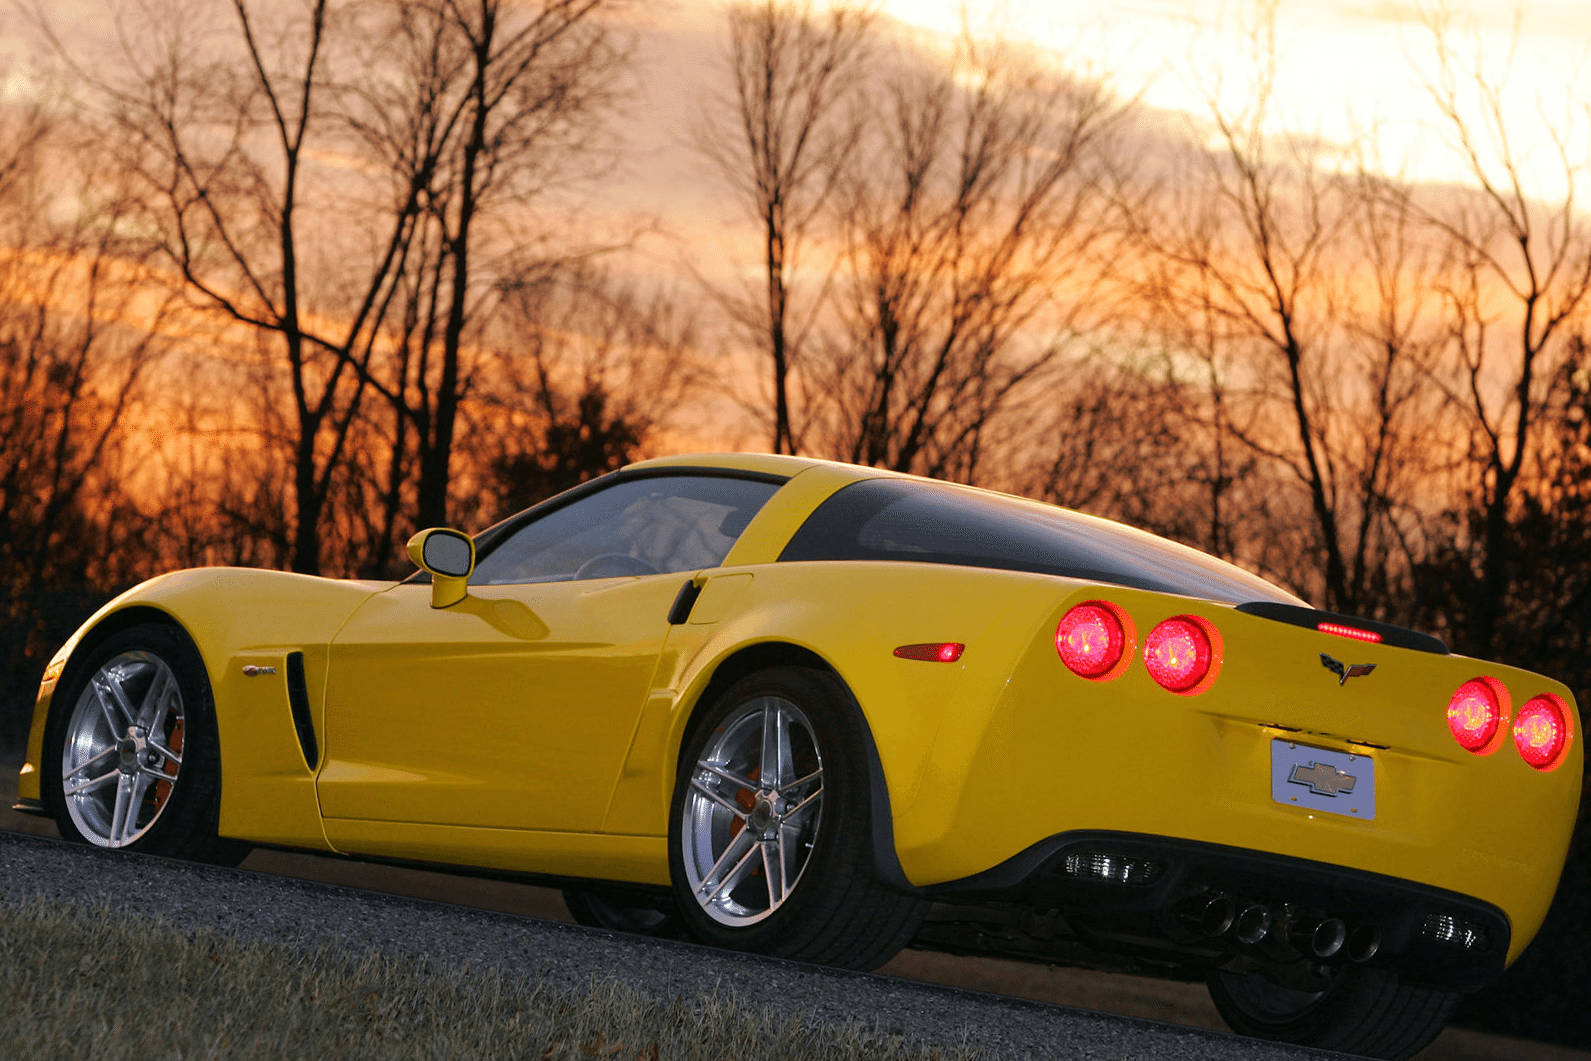 2006 Corvette Z06